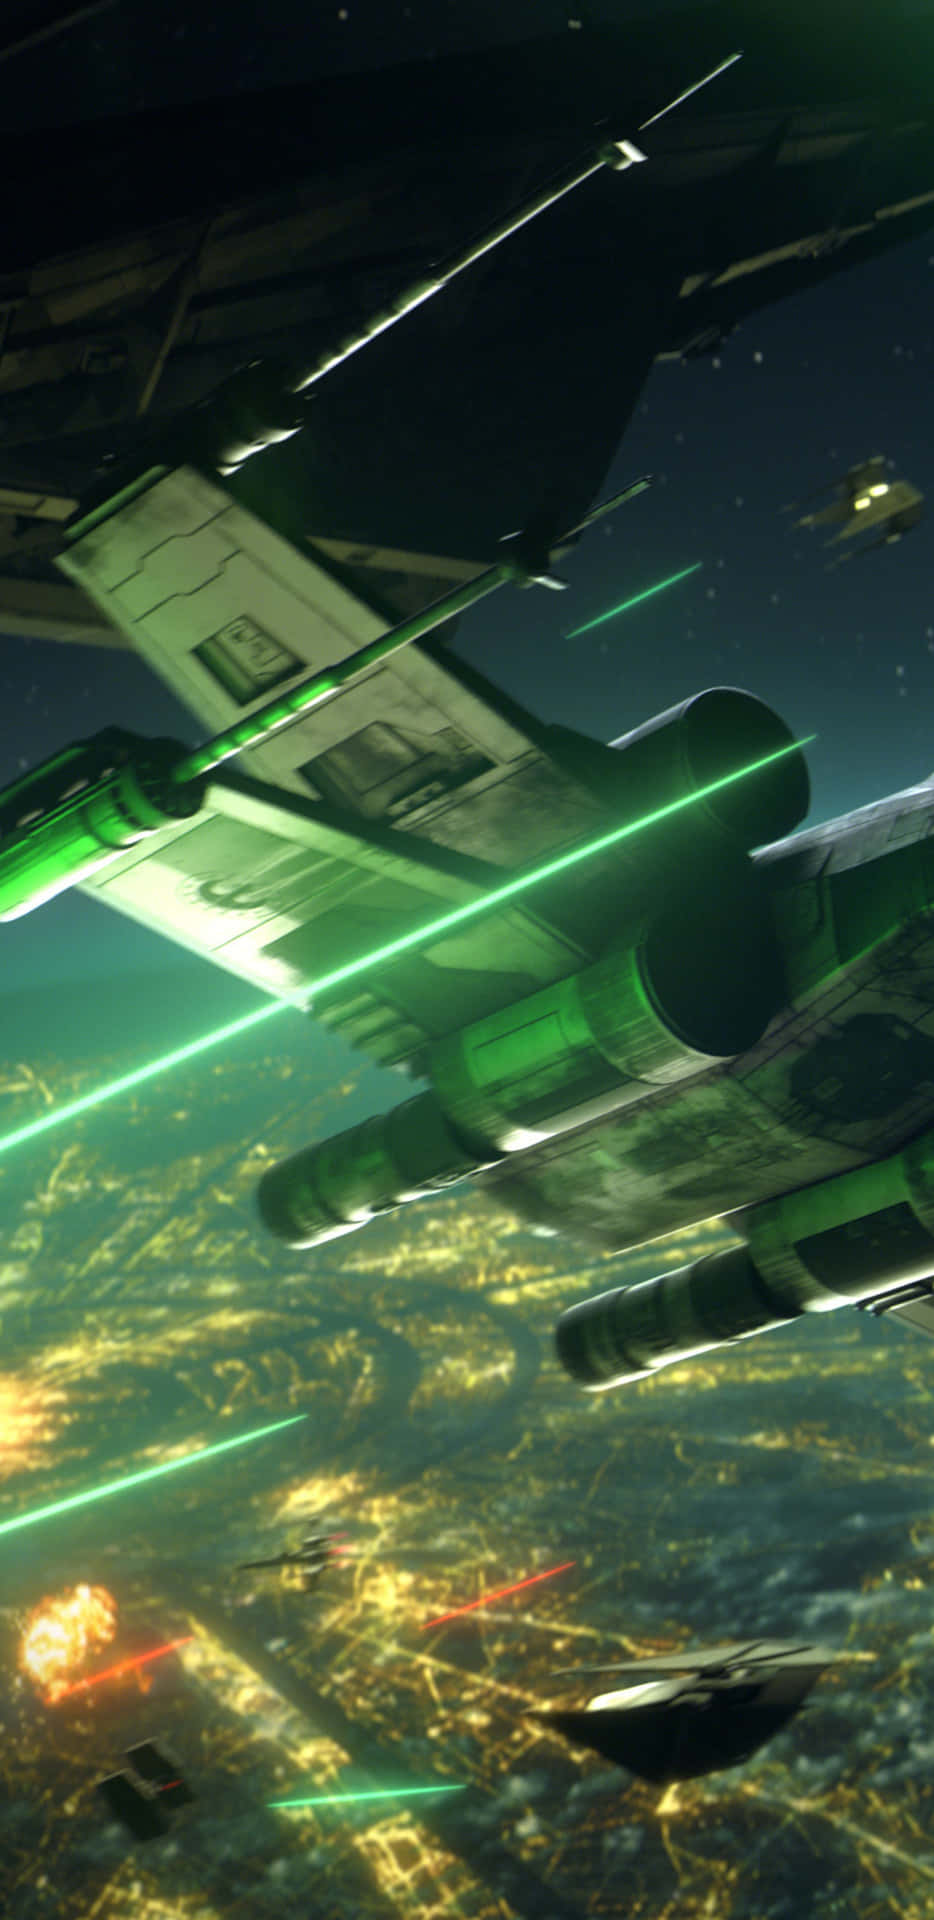 Dasfliegen Eines X-wing Raumschiffs Durch Ein Asteroidenfeld In Einem Spektakulären Stunt. Wallpaper